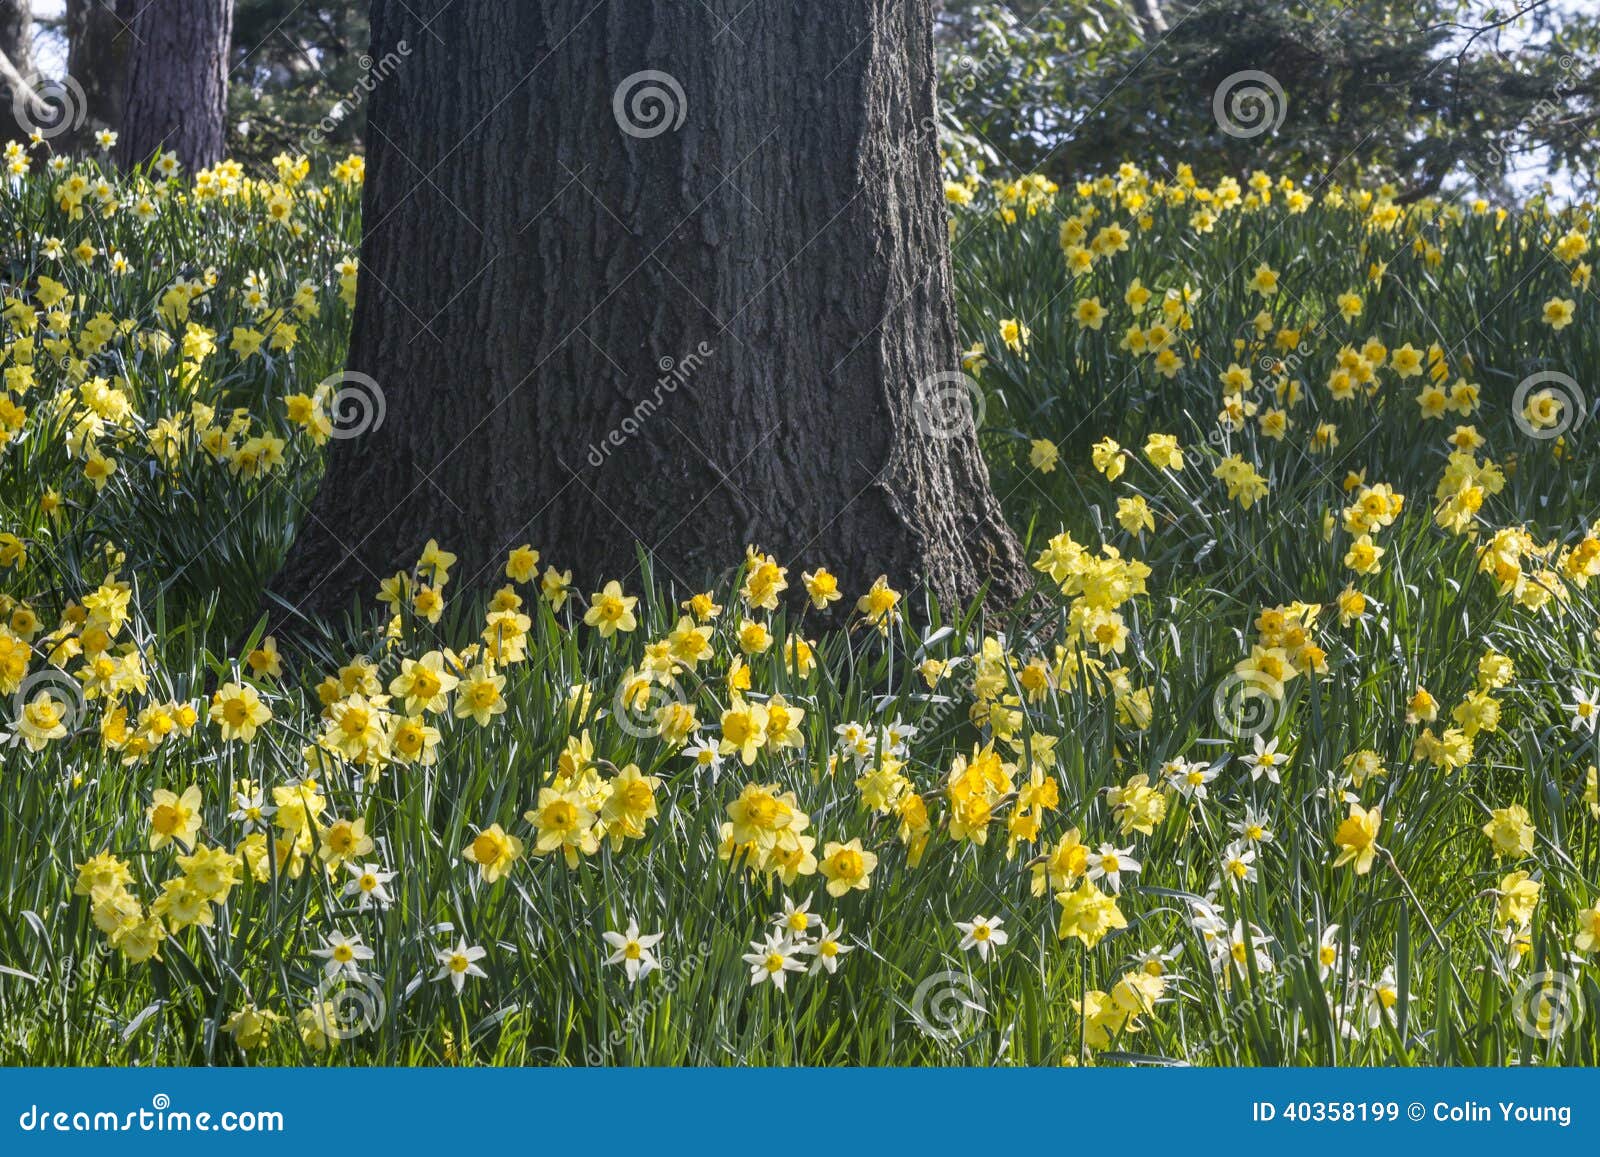 daffodils and oak